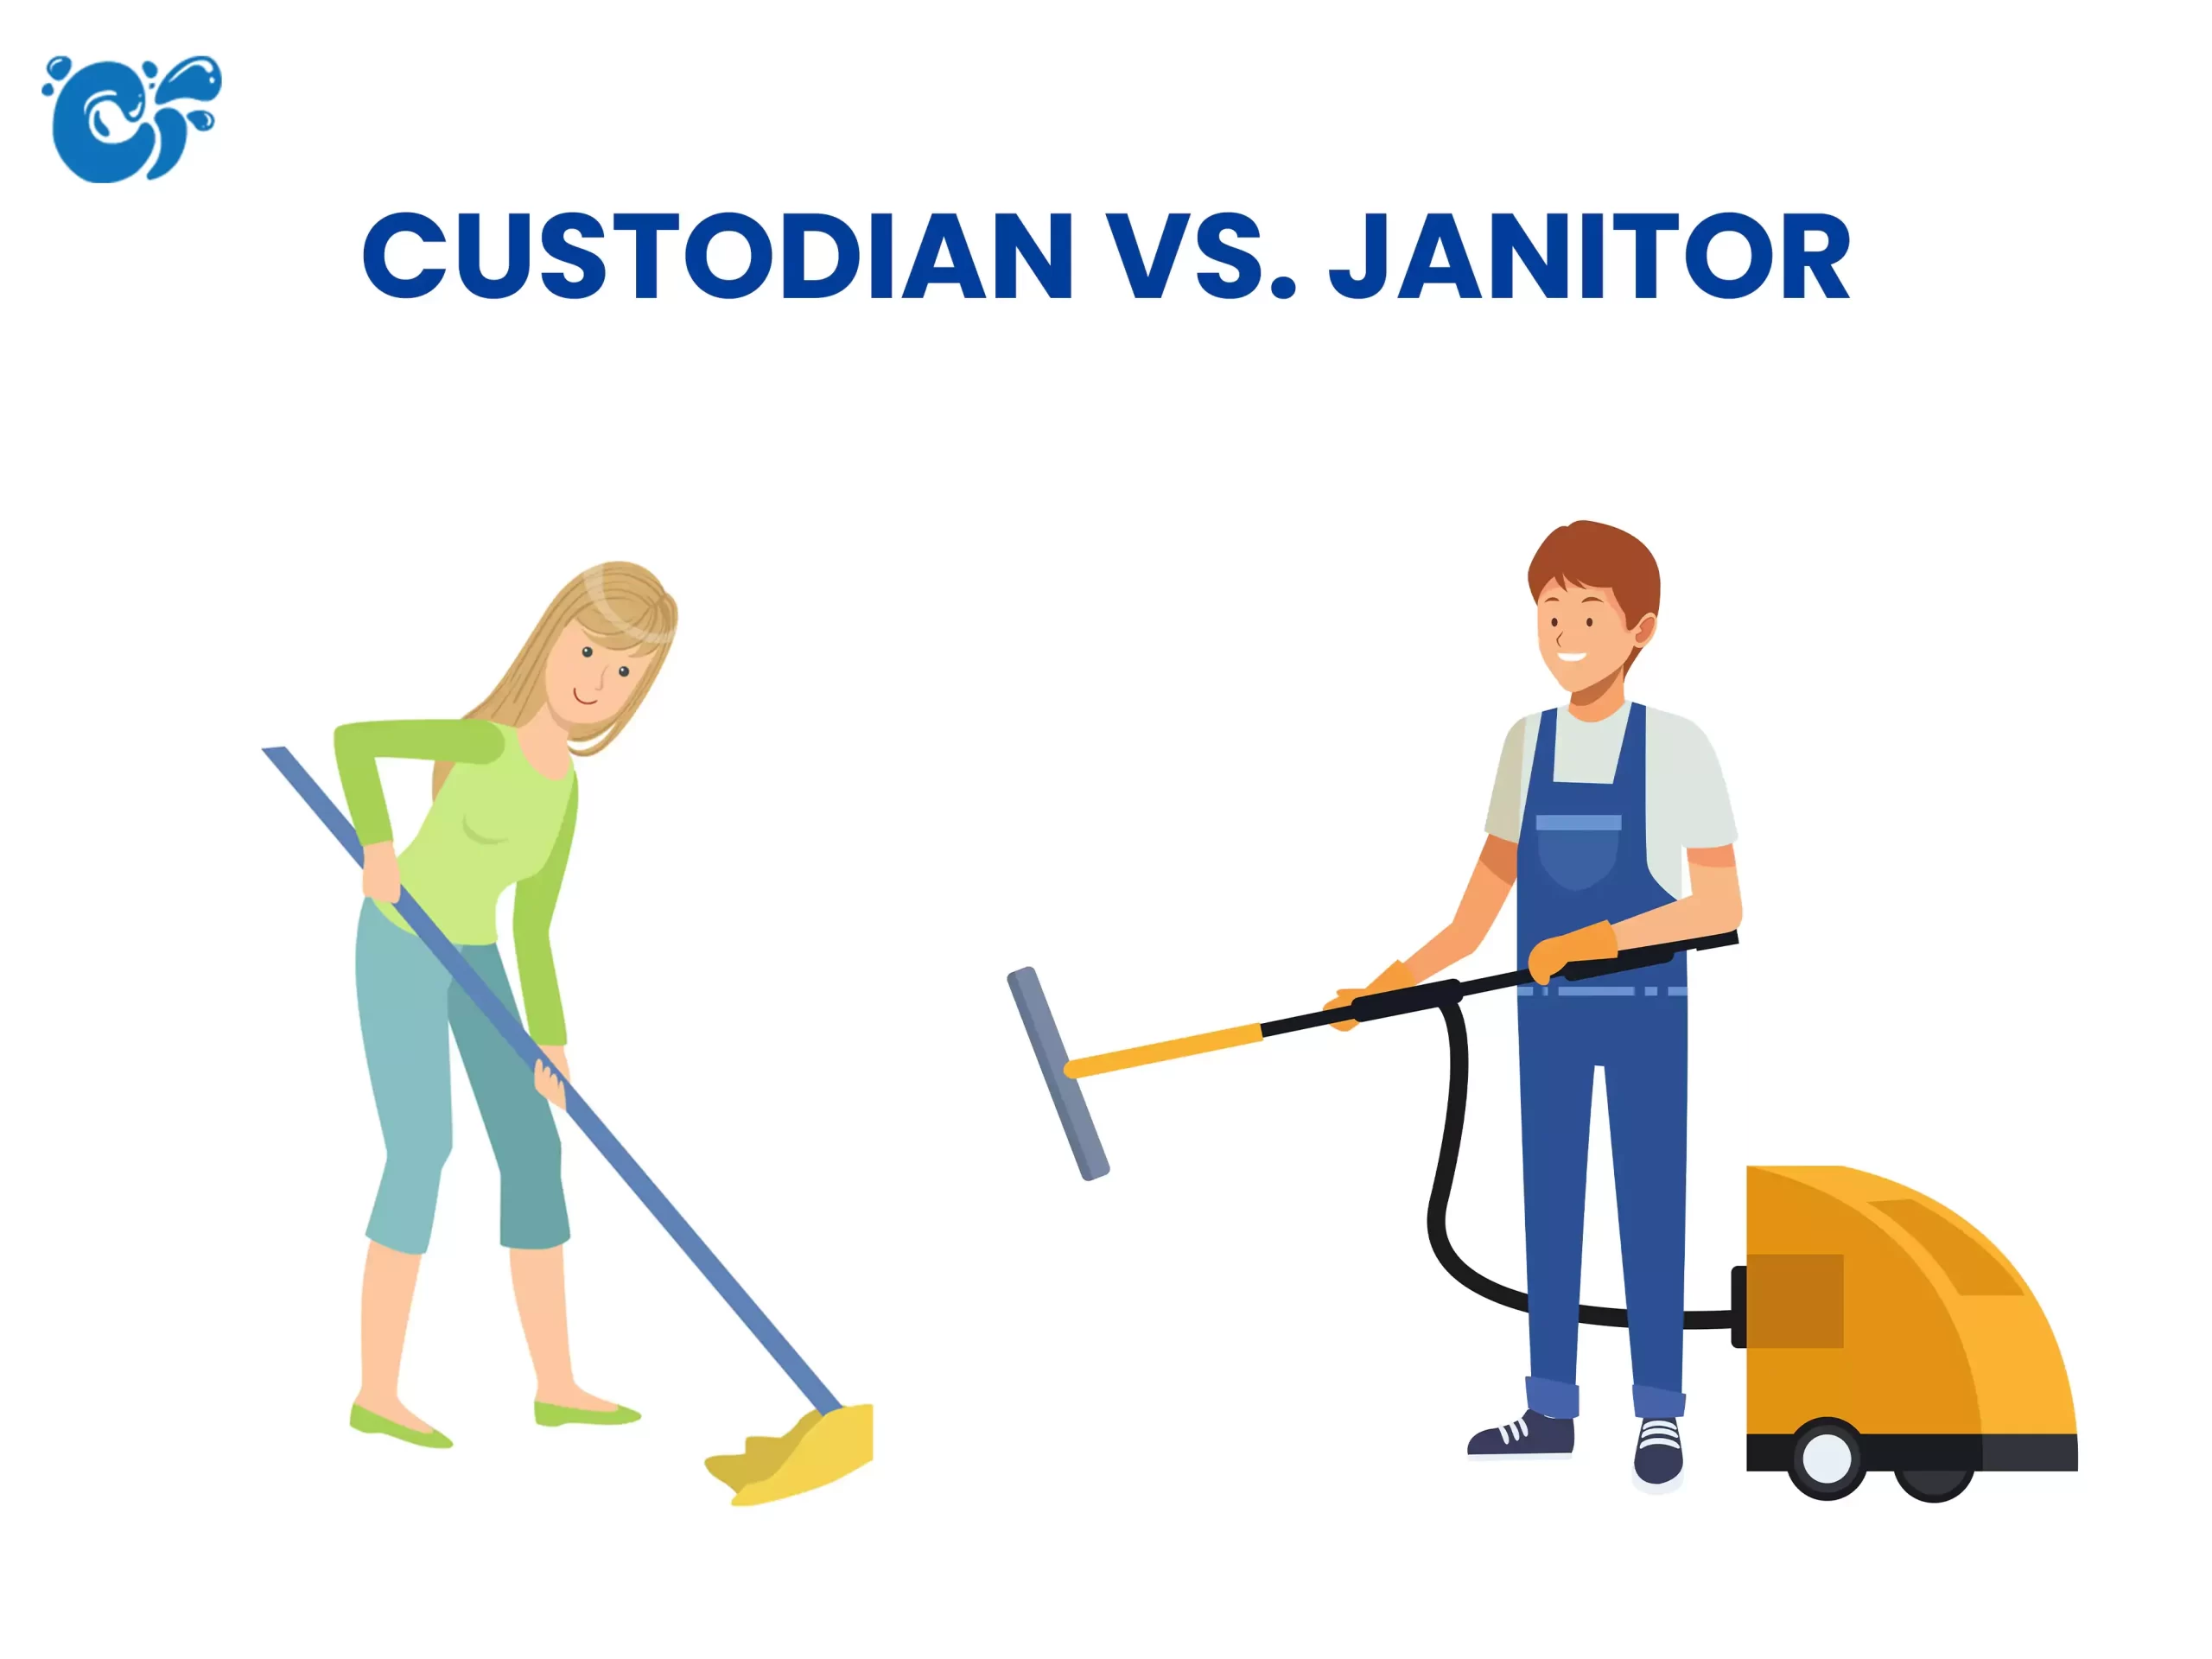 Custodian vs. Janitor